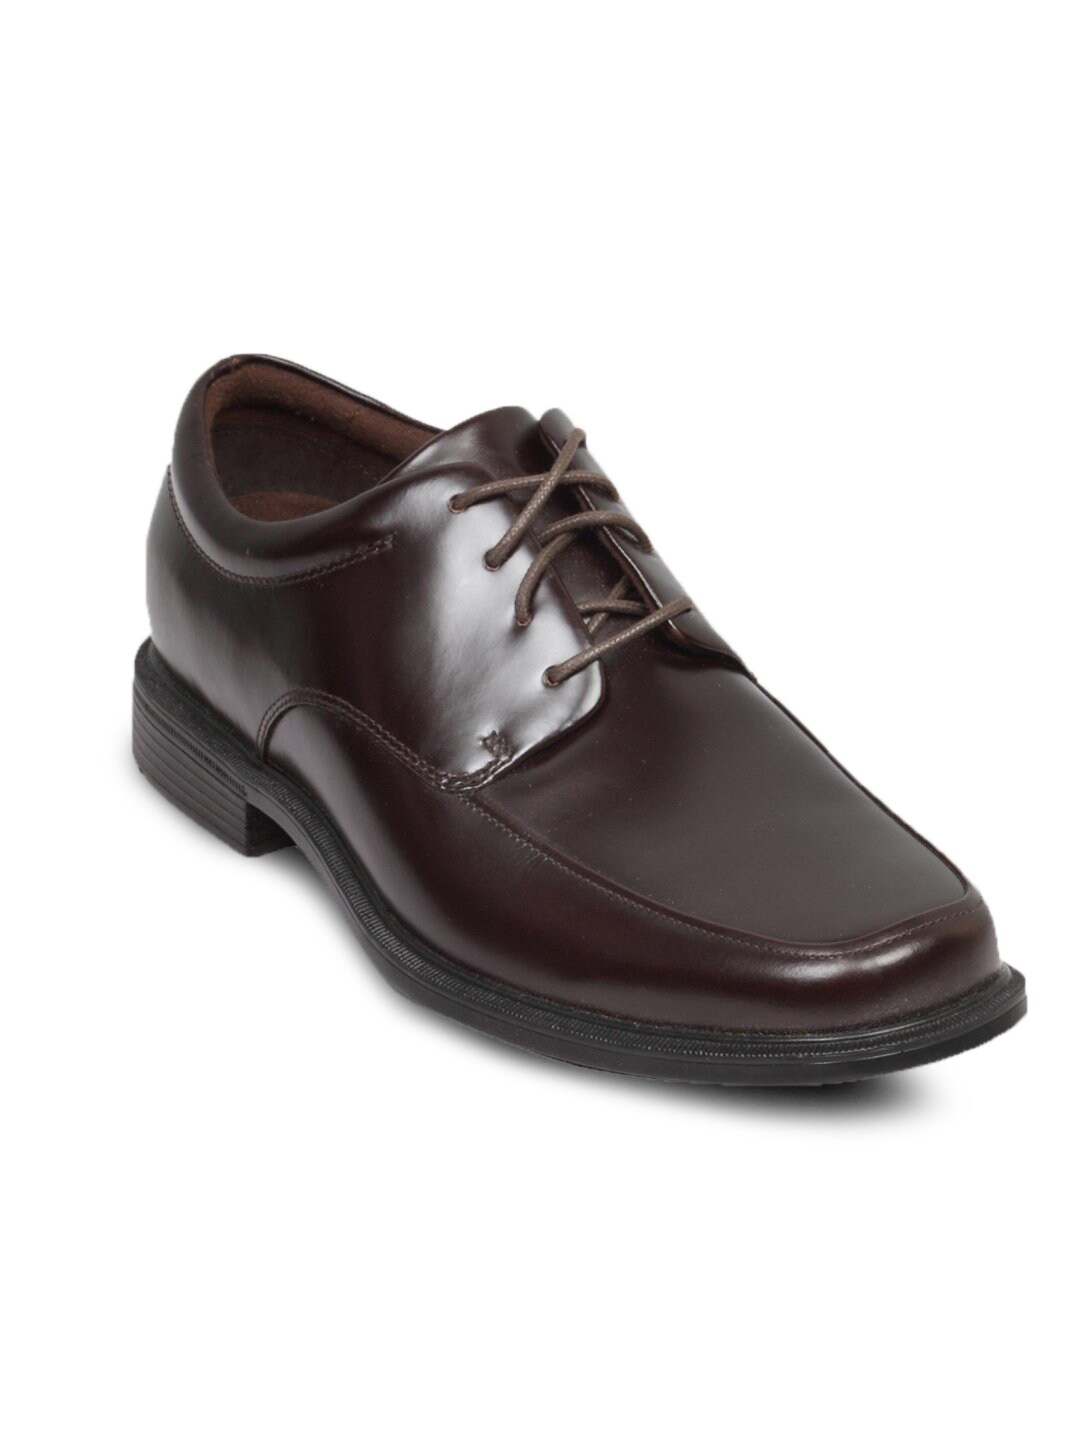 Rockport Men's Evander Brown Shoe